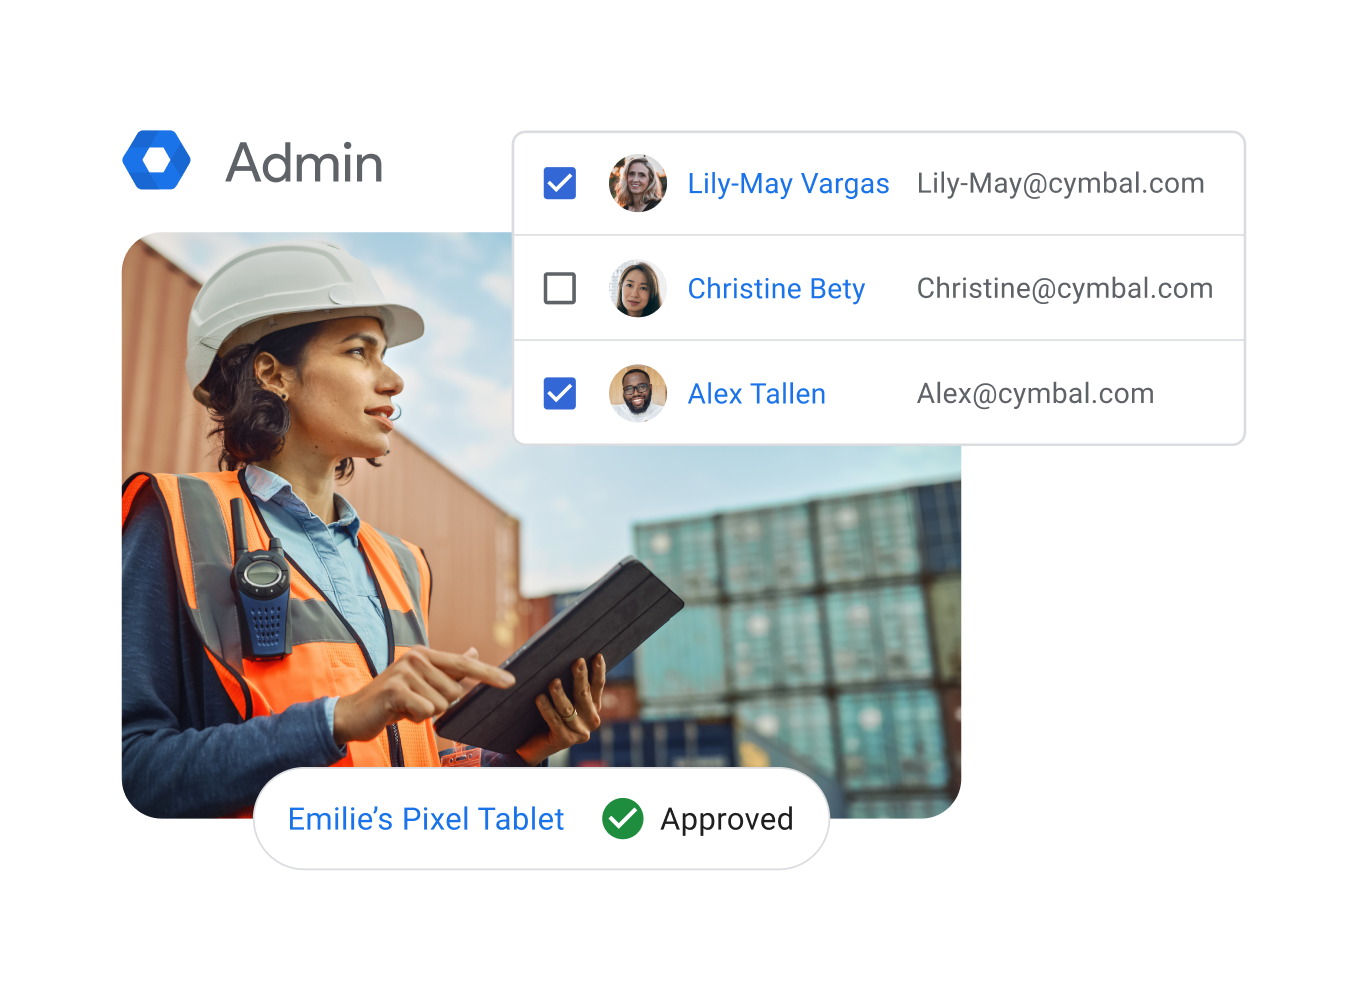 Une femme utilisant une tablette sur un chantier naval, avec en superposition des éléments d'interface utilisateur suggérant qu'elle gère l'accès des employés aux e-mails sur différents appareils.